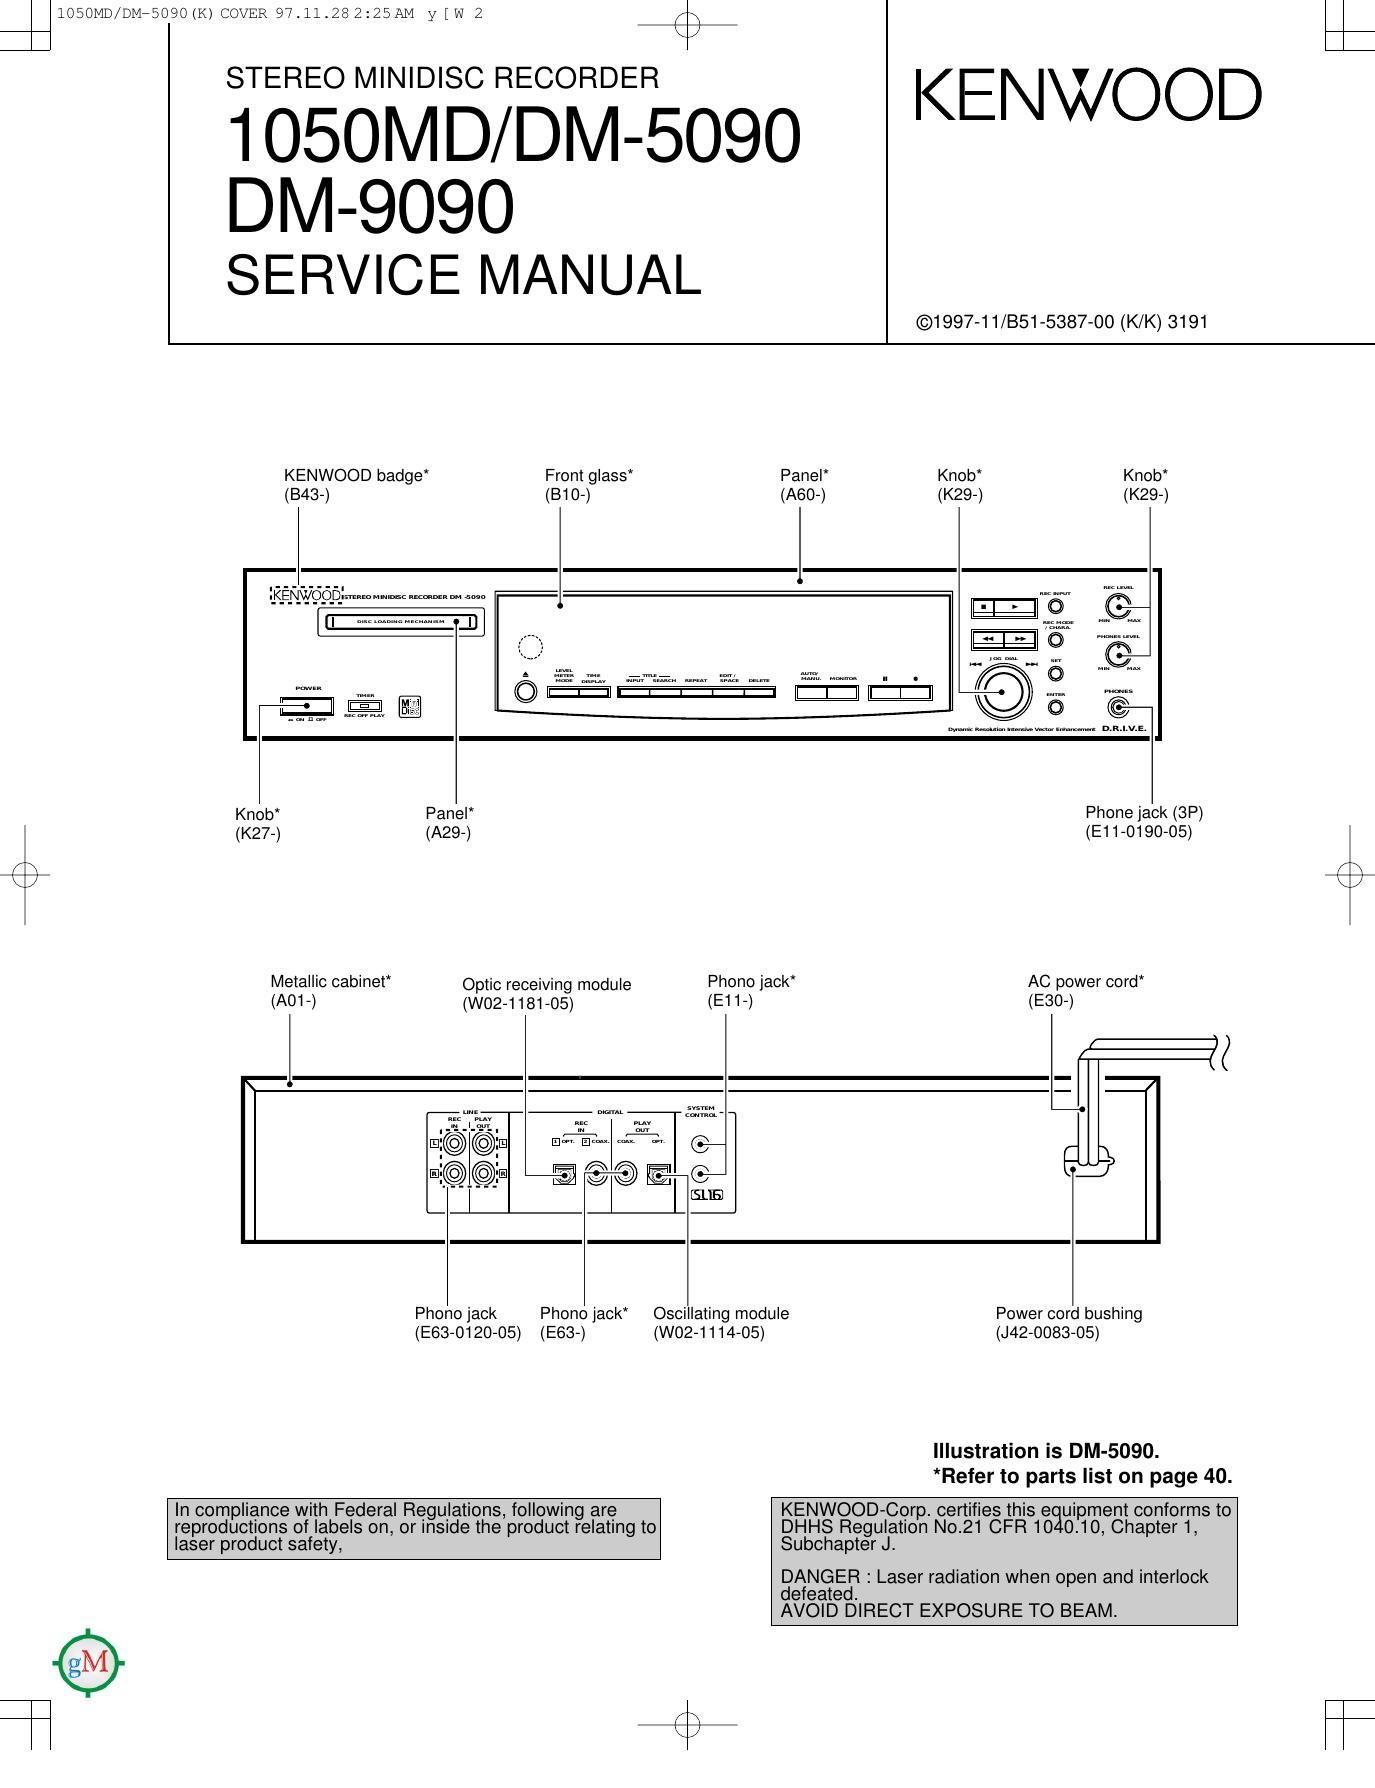 Kenwood 1050 DM Service Manual